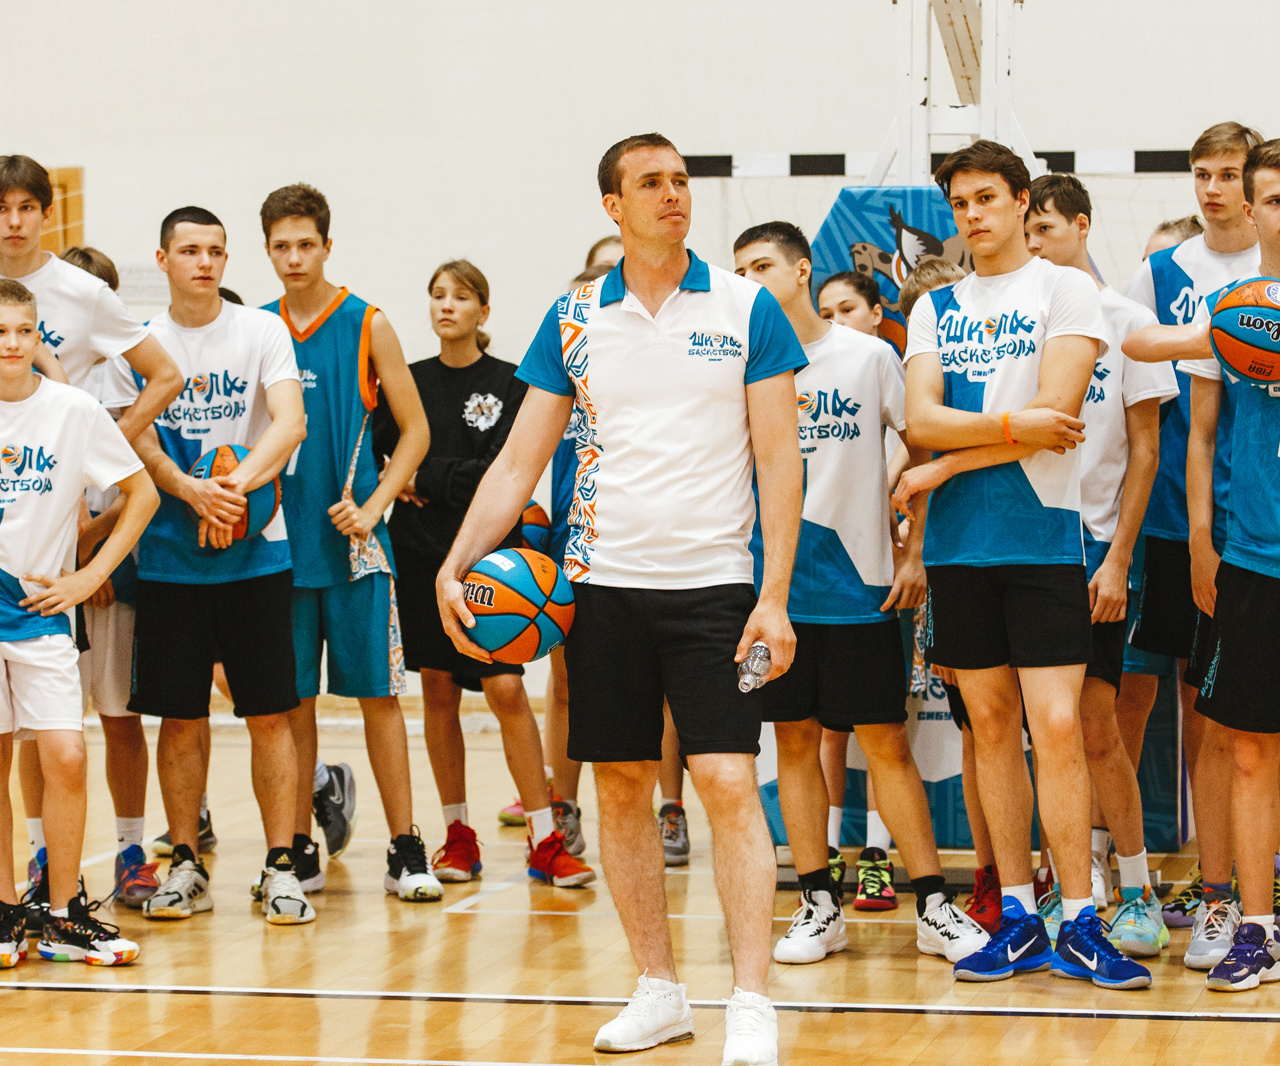 Сергей Быков: «Может, вернусь в баскетбол в какой-то интересной роли»